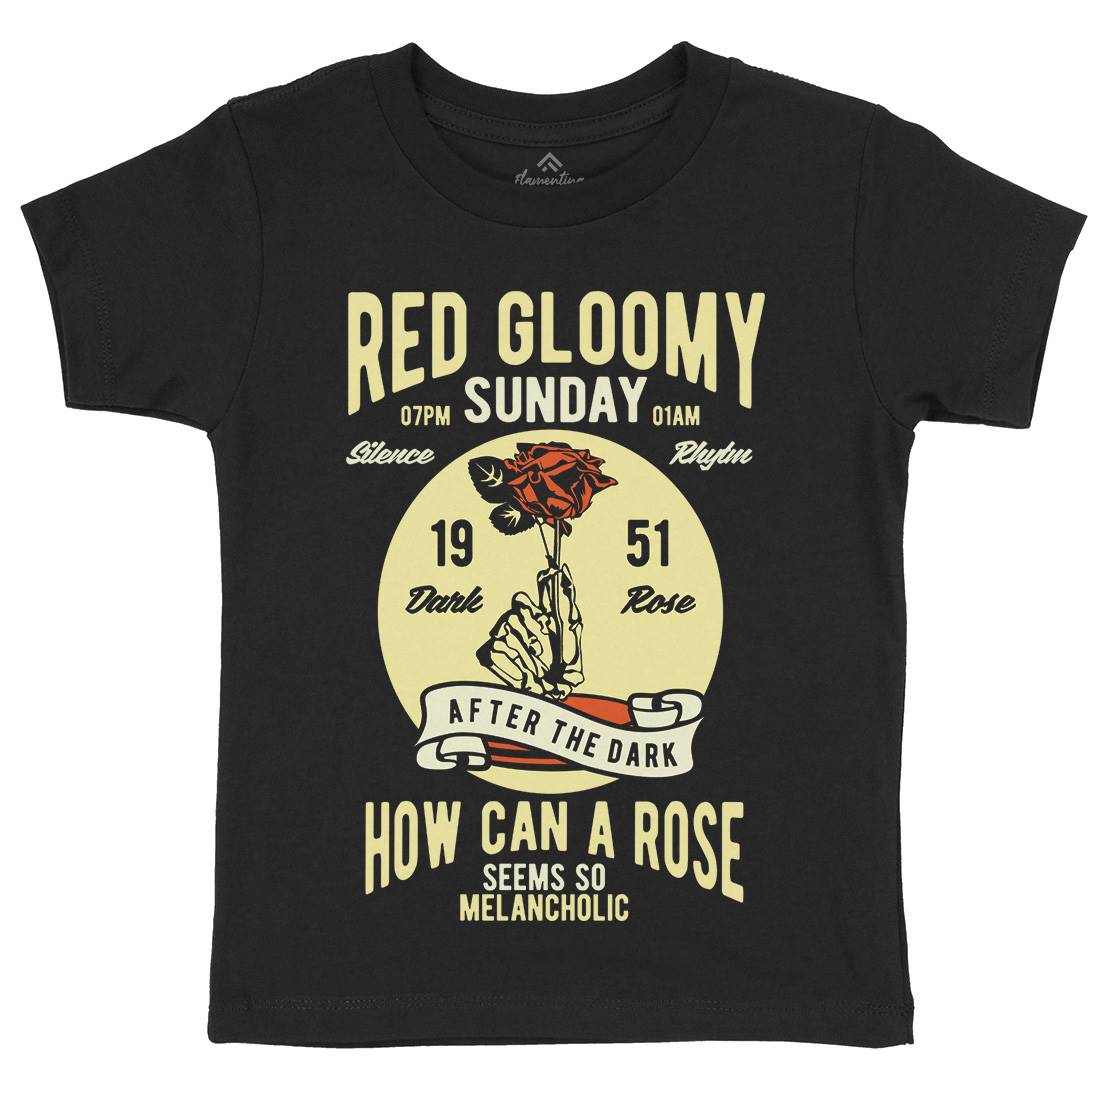 Red Gloomy Sunday Kids Organic Crew Neck T-Shirt Retro B437